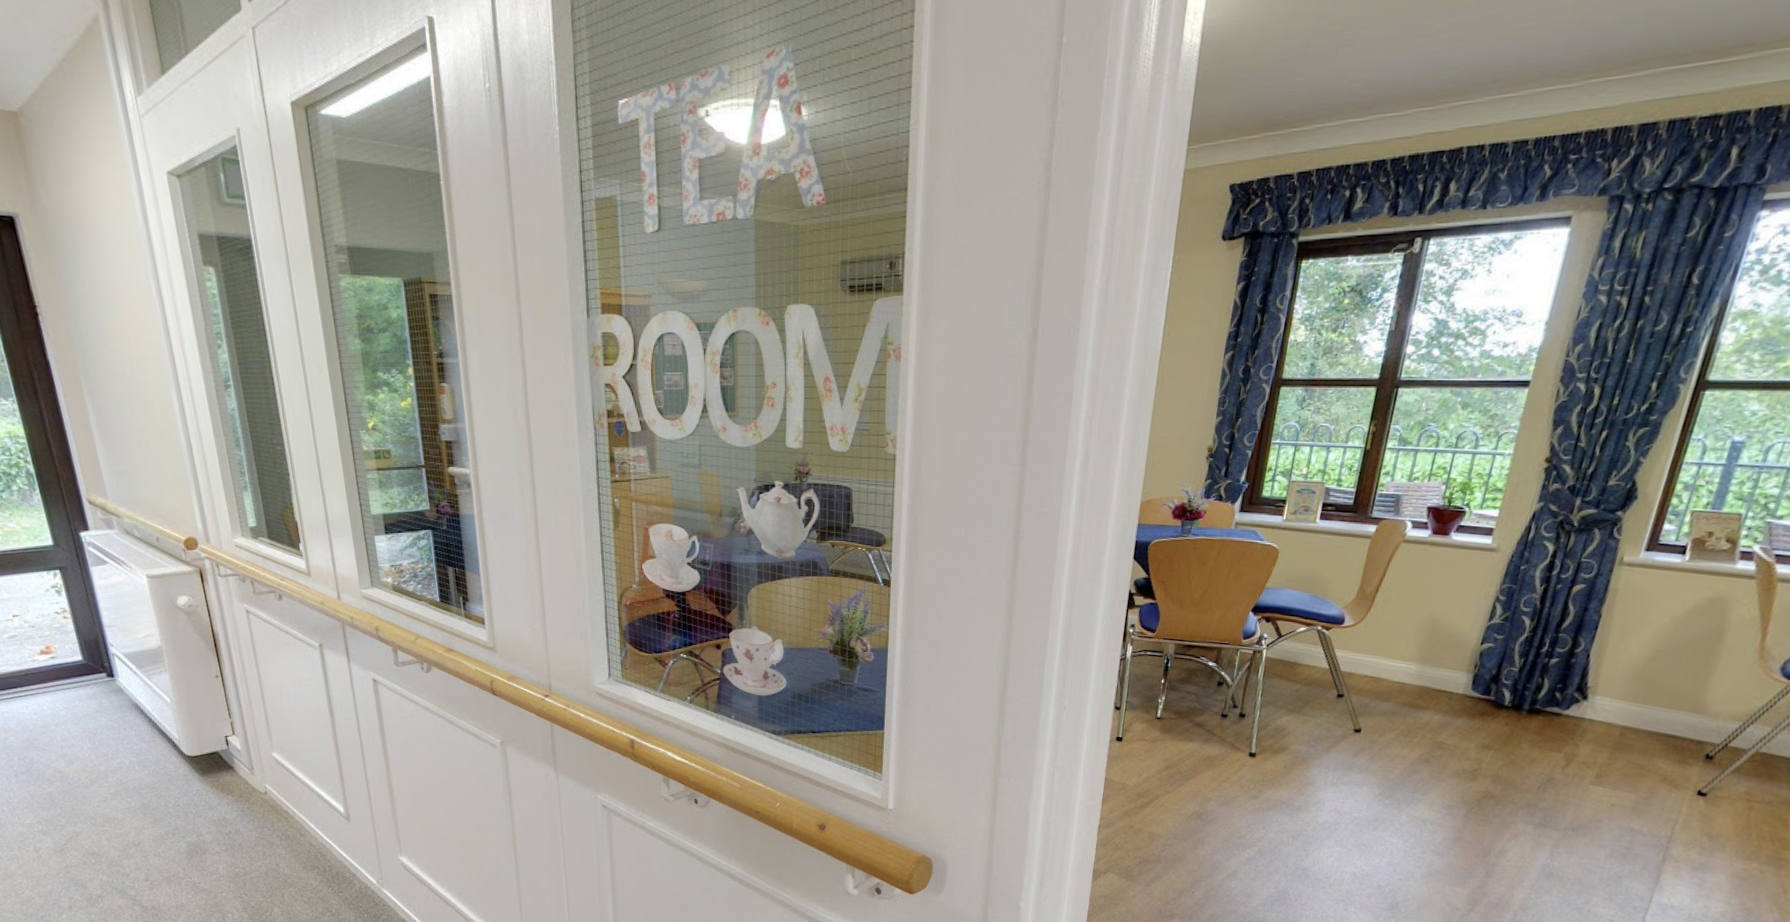 Tea room of Premier Court care home in Bishop's Stortford, Hertfordshire